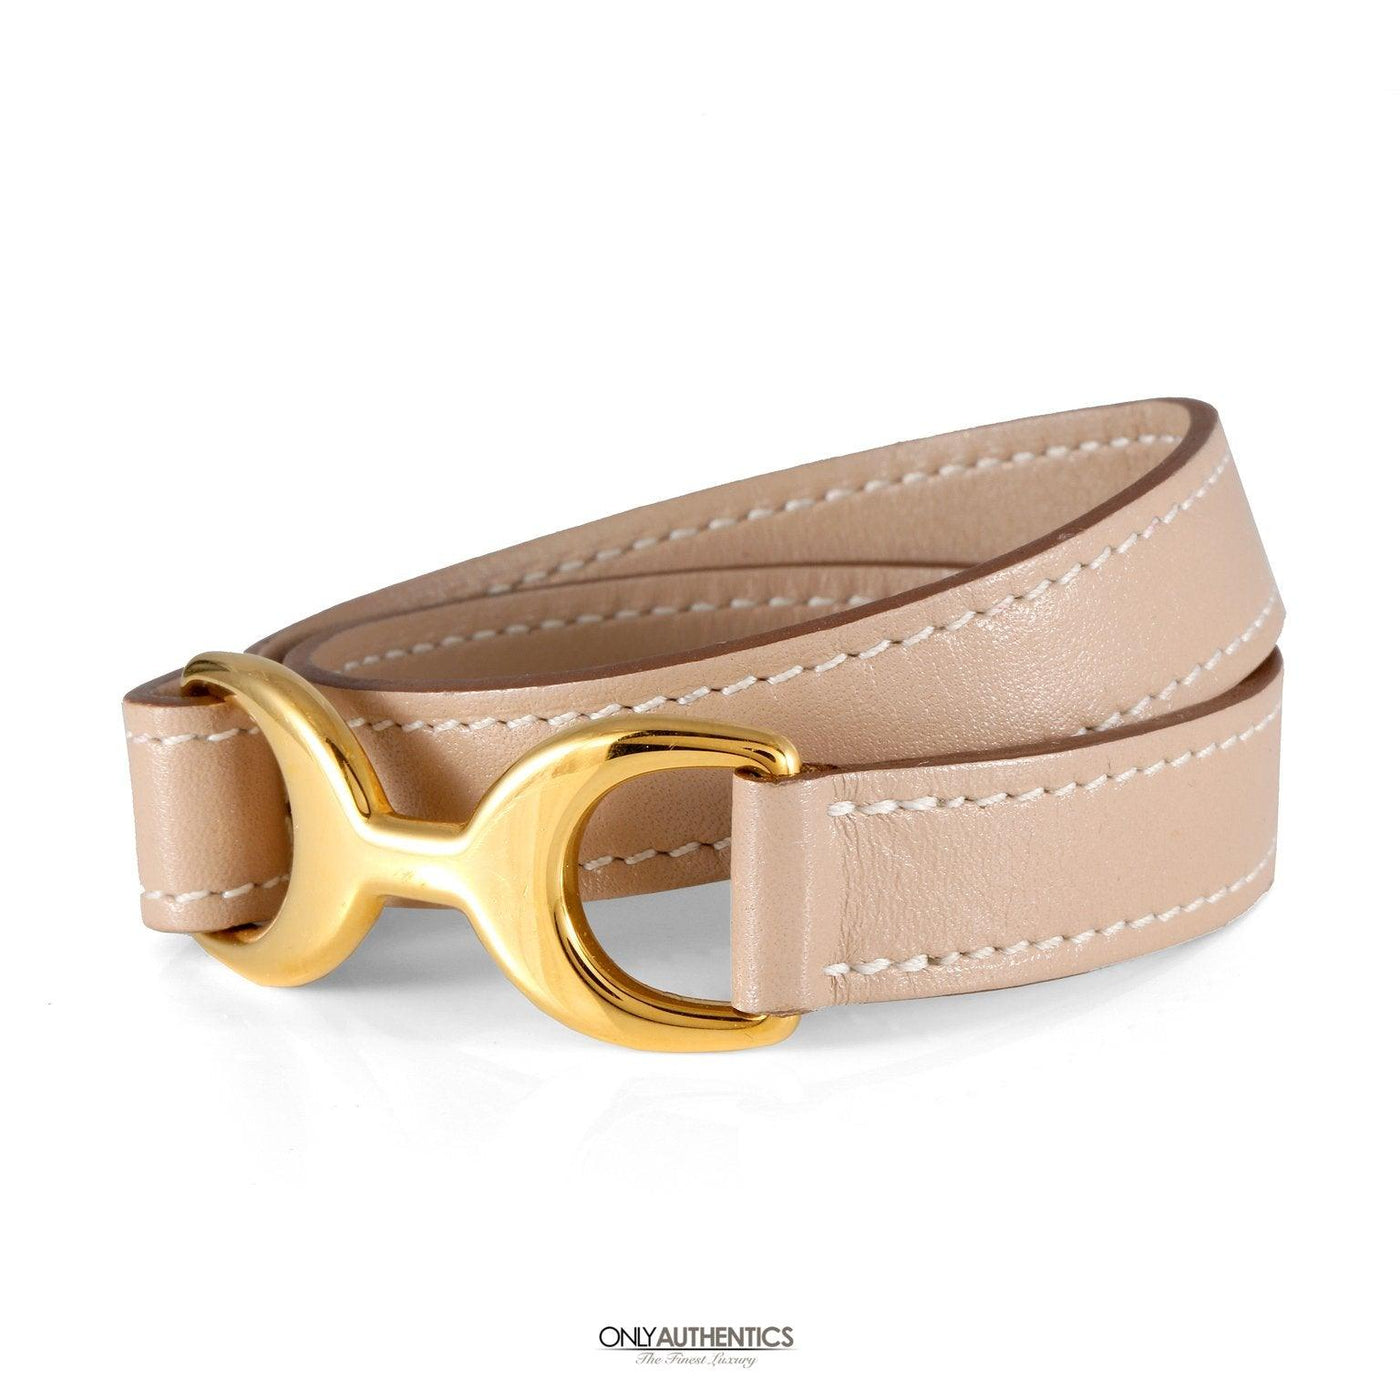 Hermès Pavane Double Tour Bracelet - Only Authentics